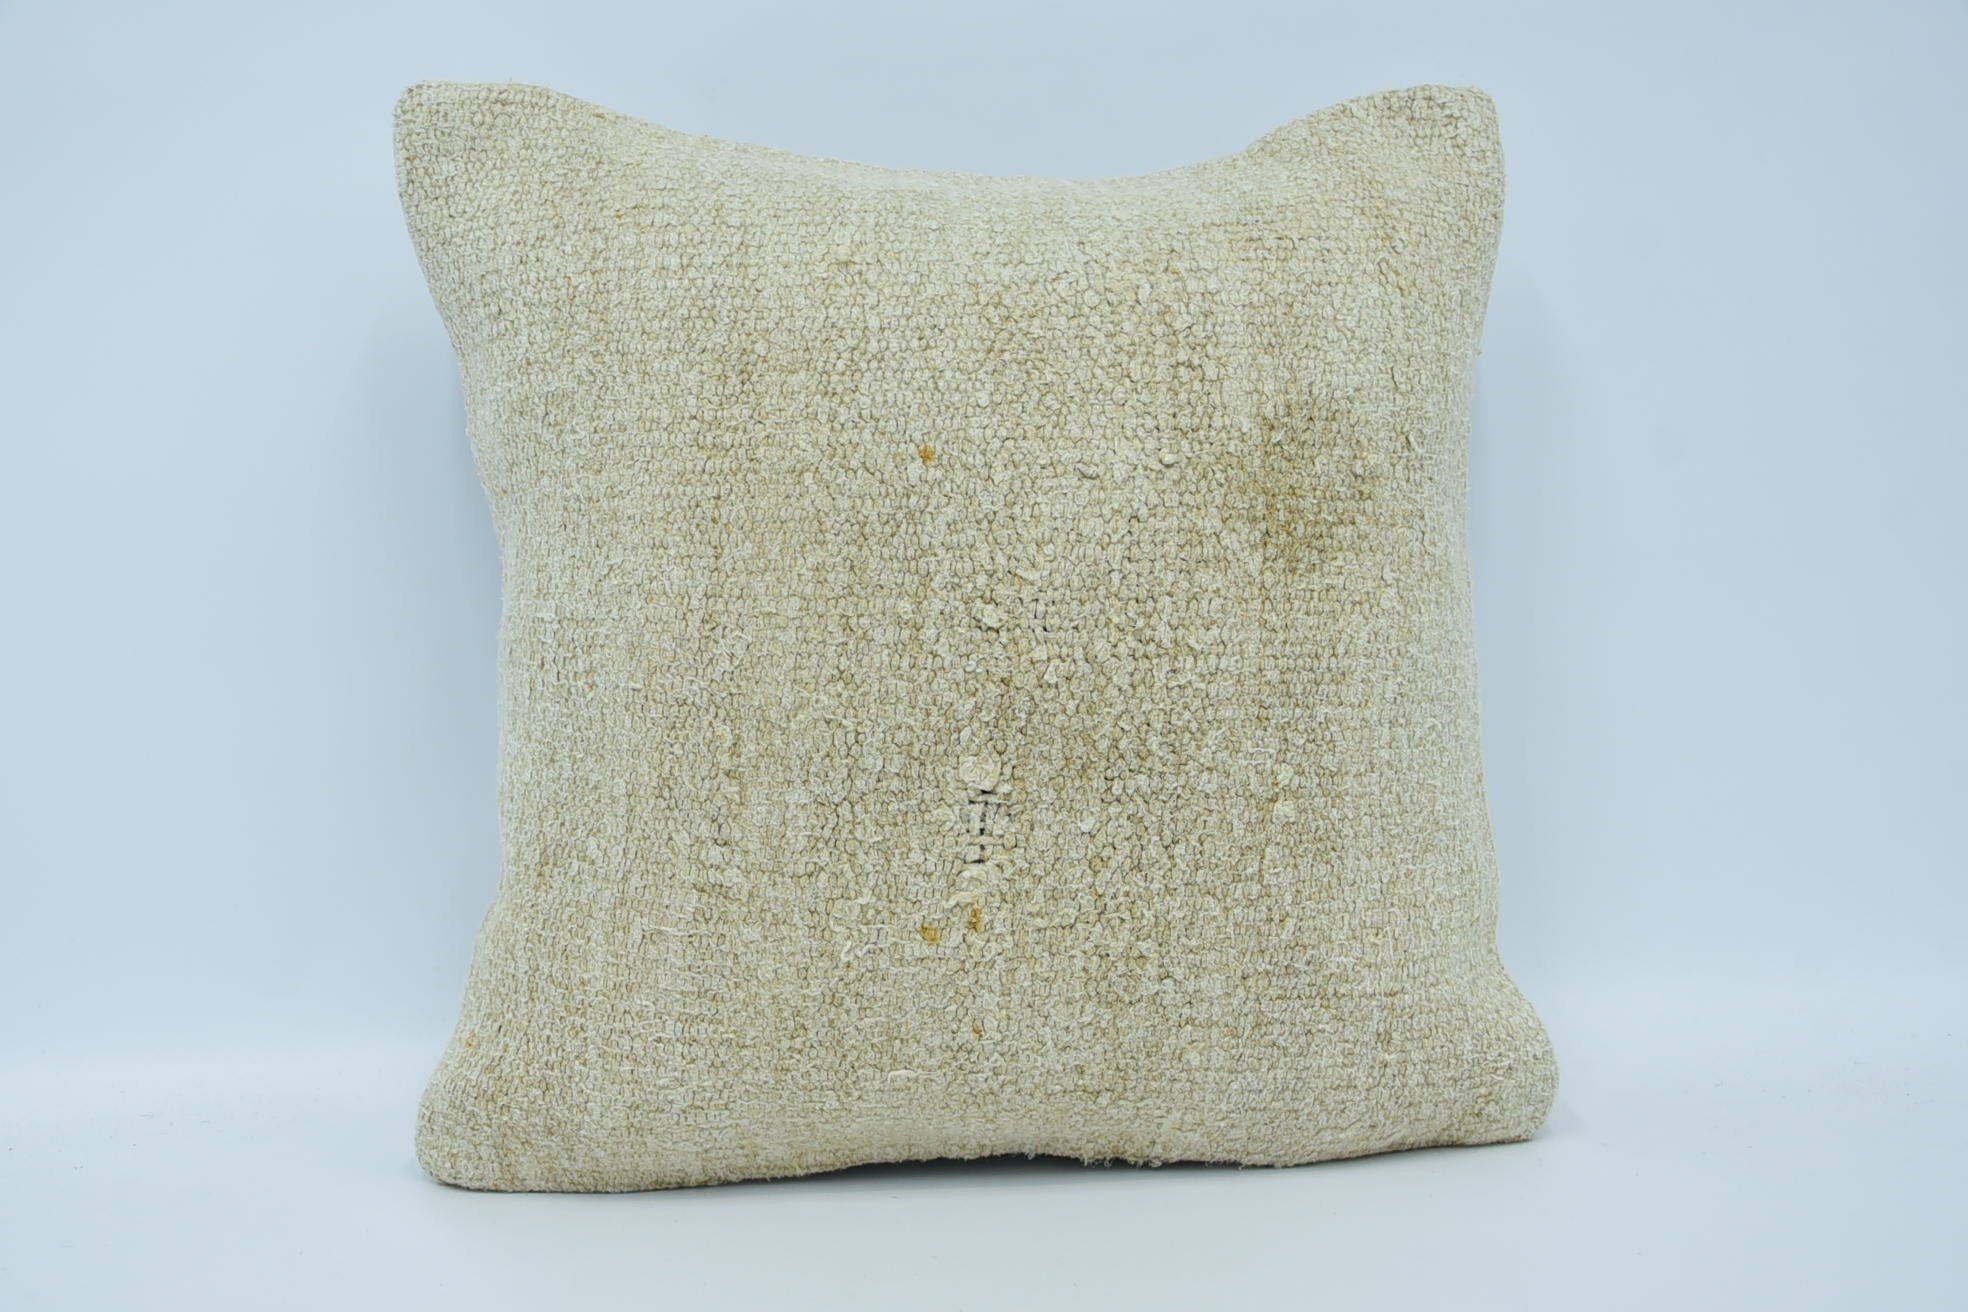 18"x18" Beige Pillow, Antique Pillows, Kilim Cushion Sham, Kilim Pillow, Handwoven Pillow Case, Chair Cushion